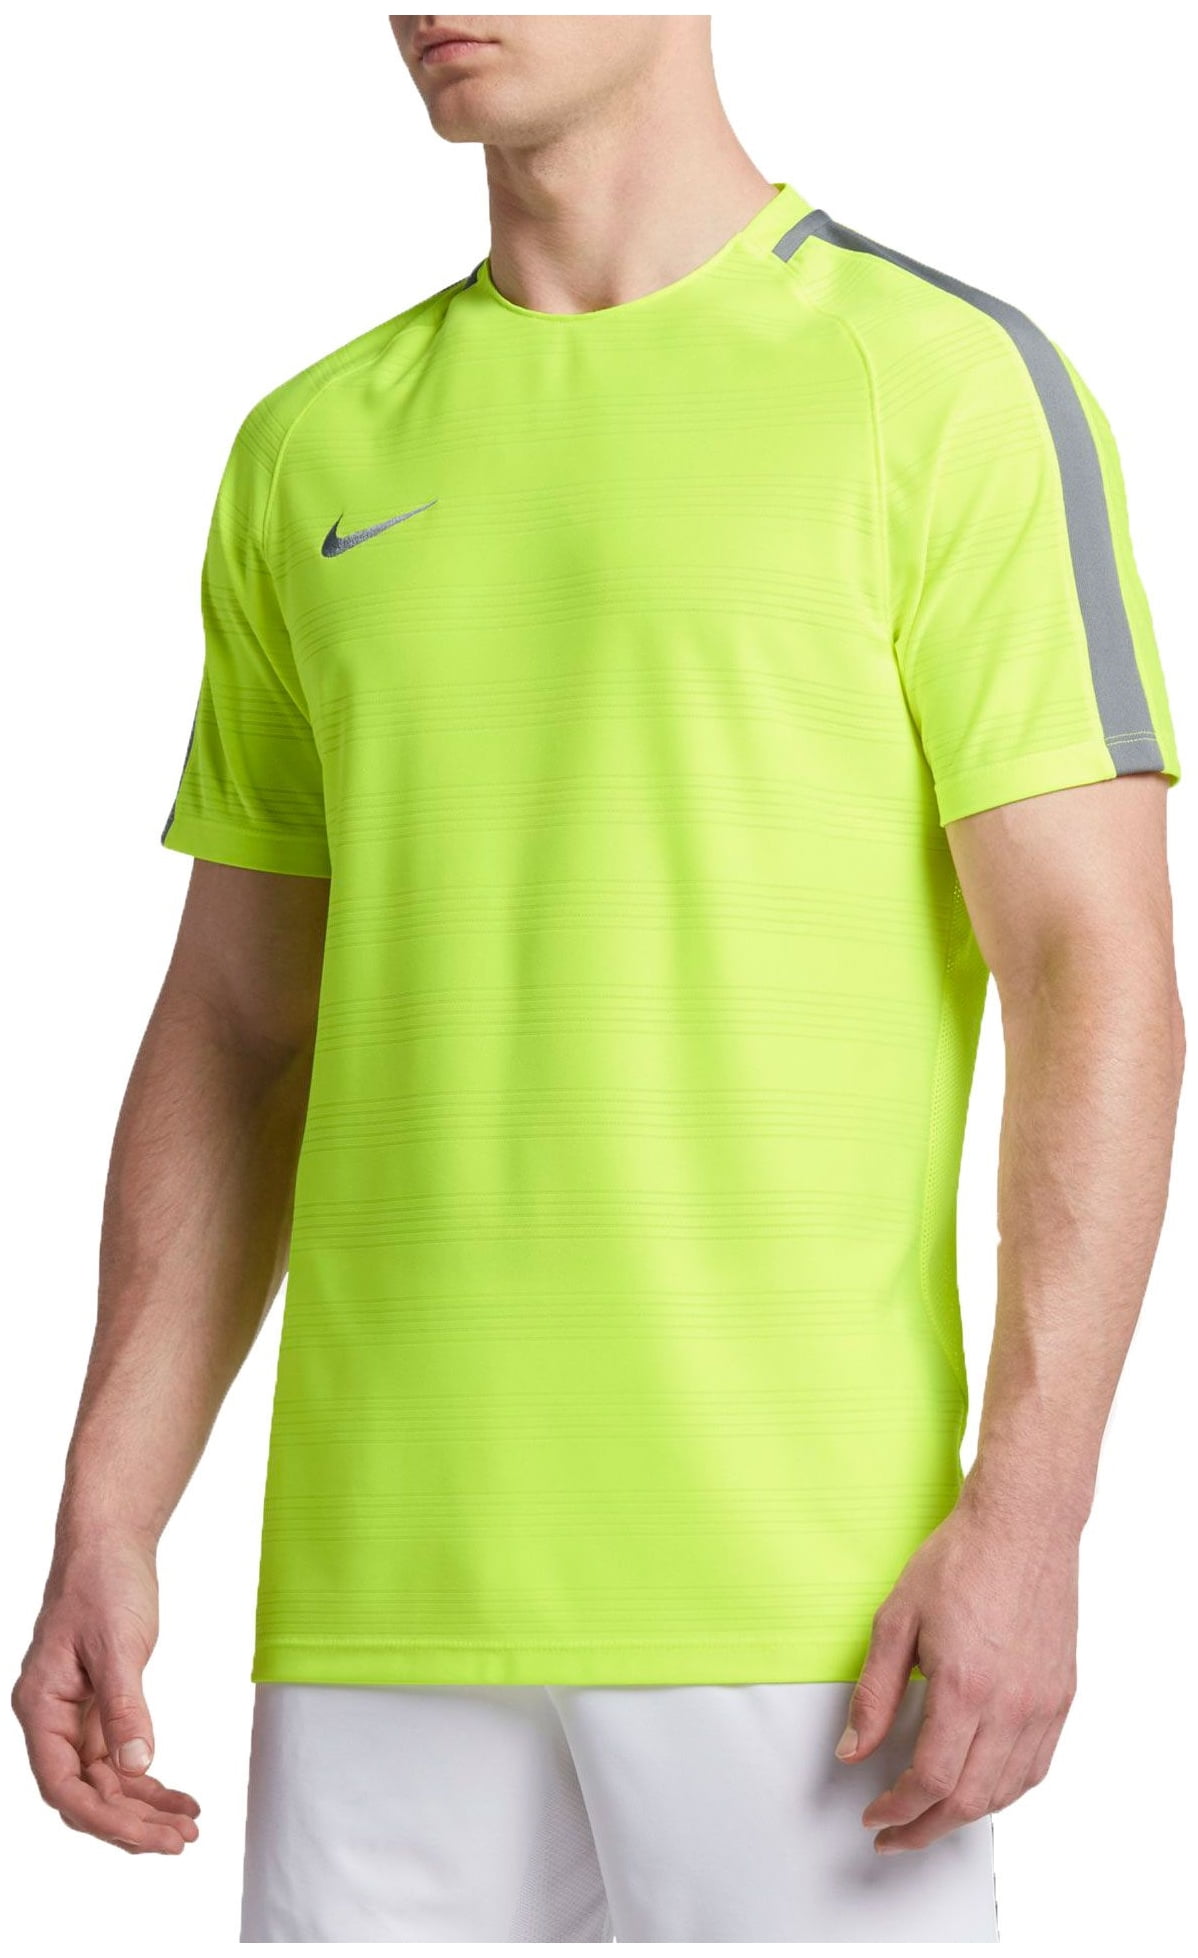 Nike - Nike Men's Dry Squad Soccer T-Shirt - Volt/Black - Size S ...